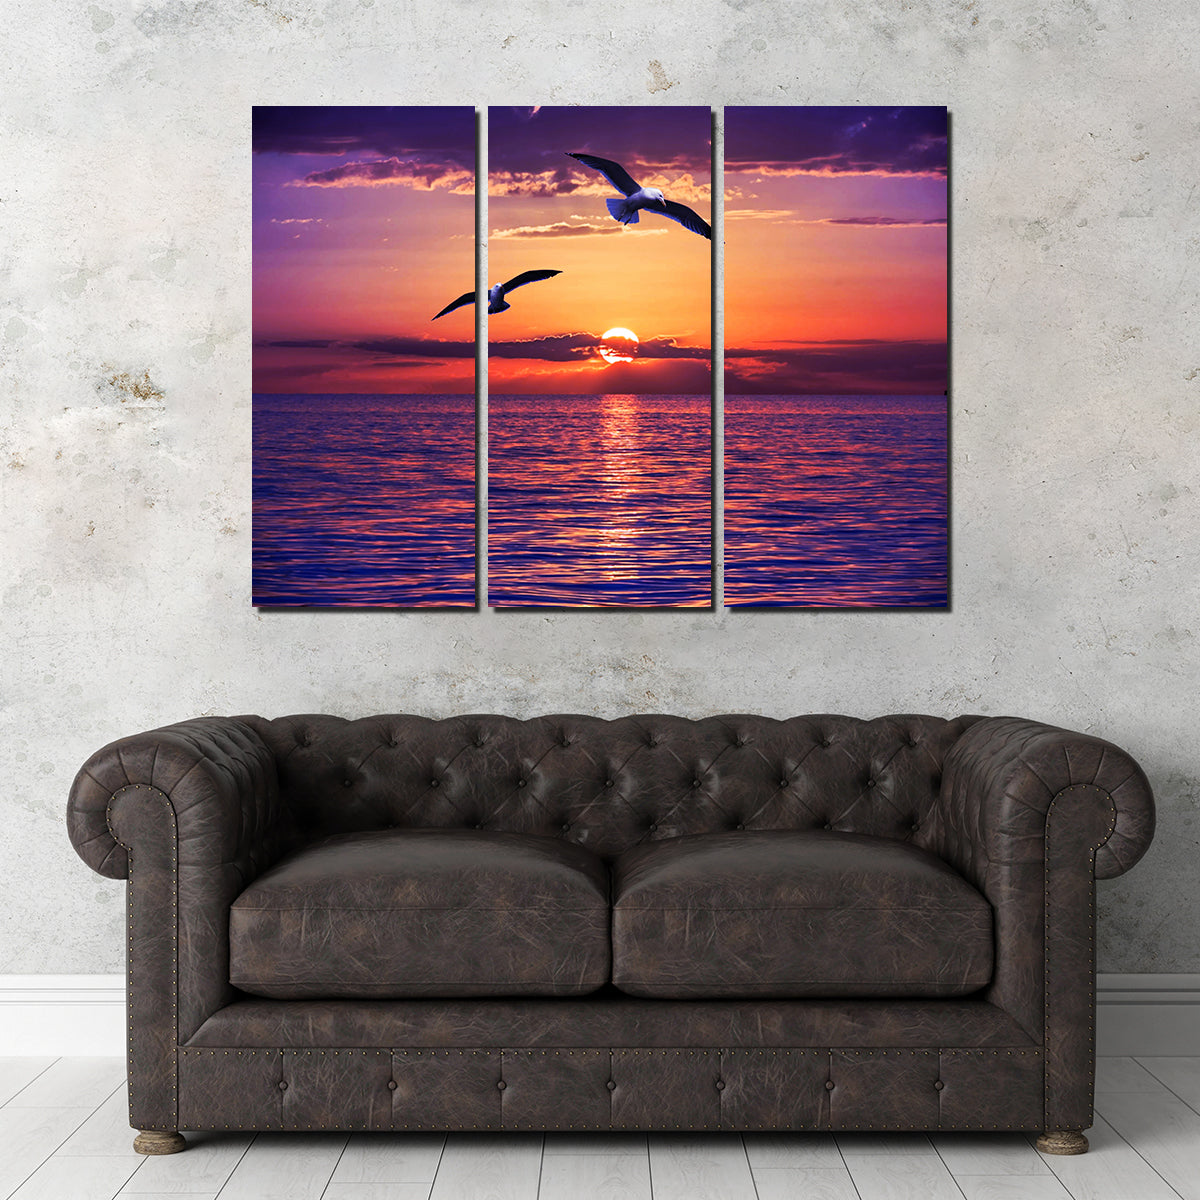 Sunset Seagulls